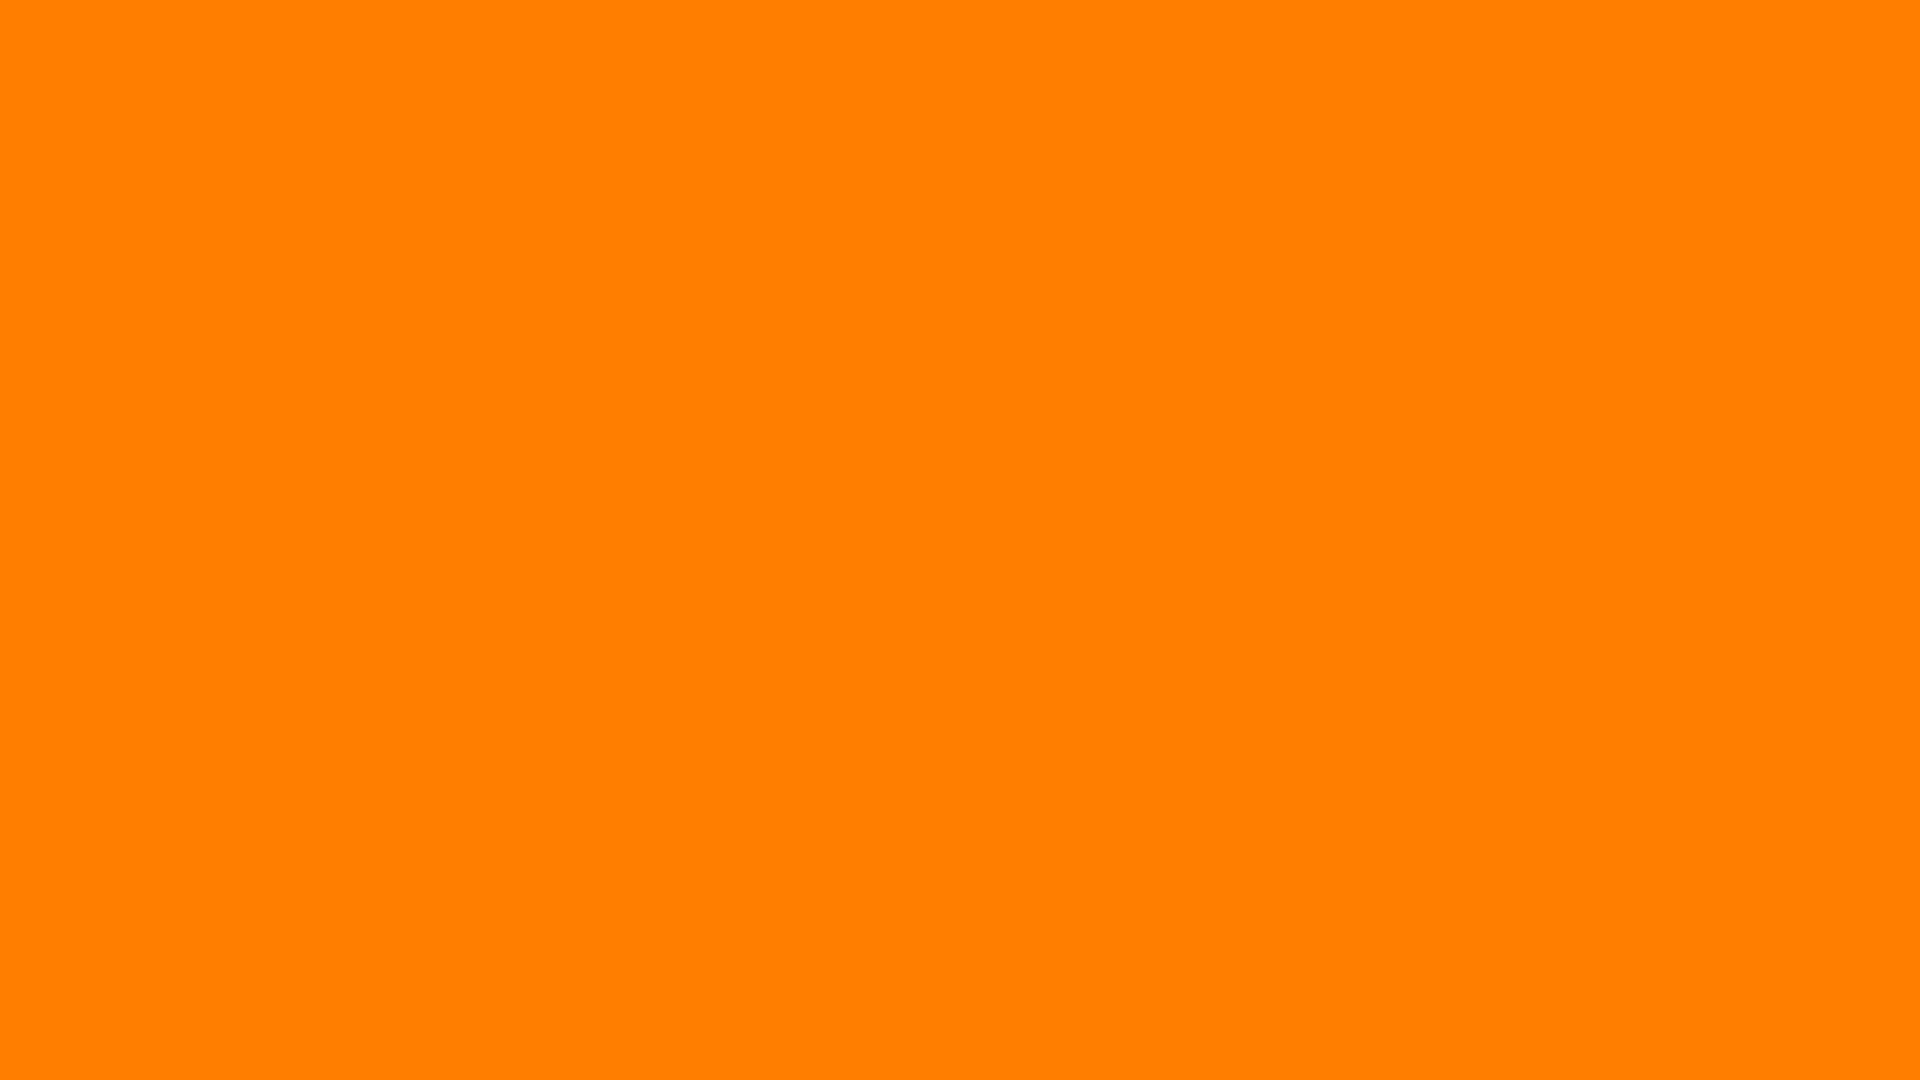 Tổng hợp Solid background orange tuyệt đẹp cho bạn